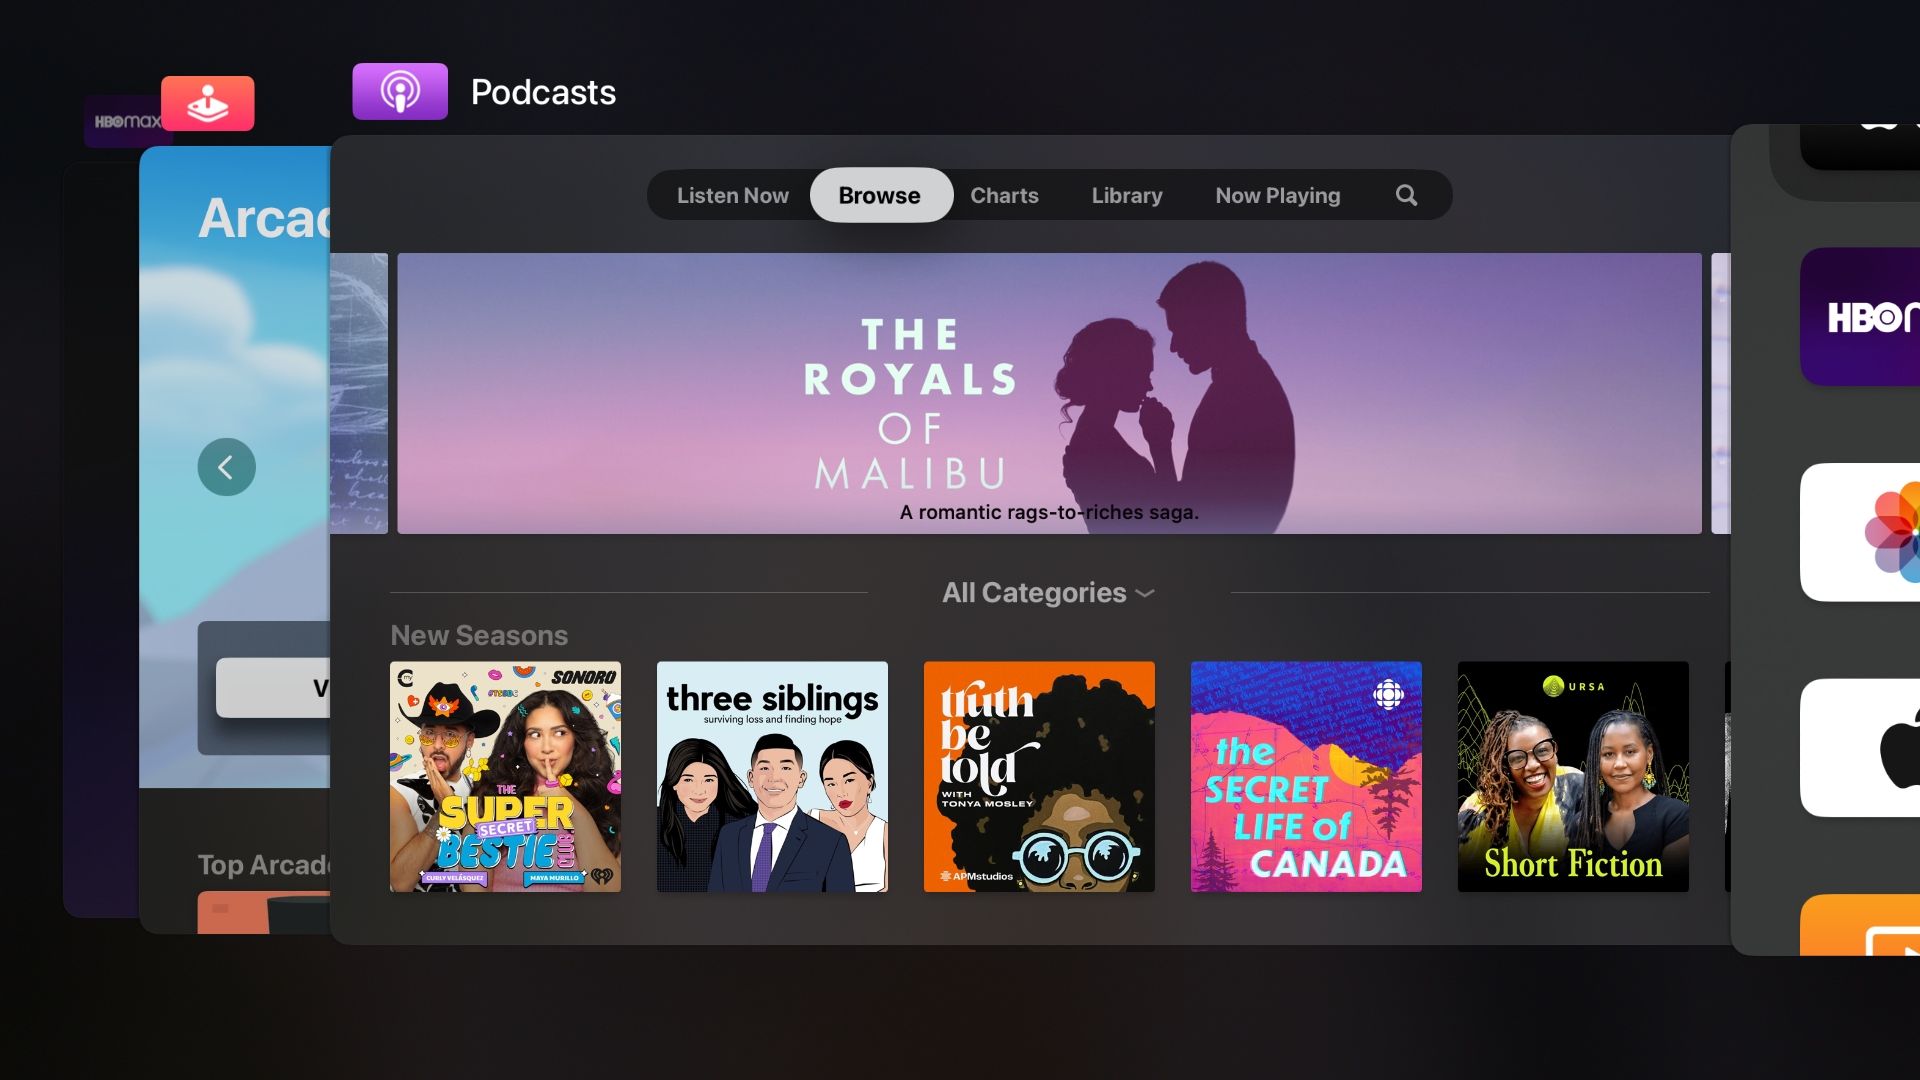 Captura de tela da Apple TV mostrando o alternador de apps tvOS com o app Apple Podcasts no centro